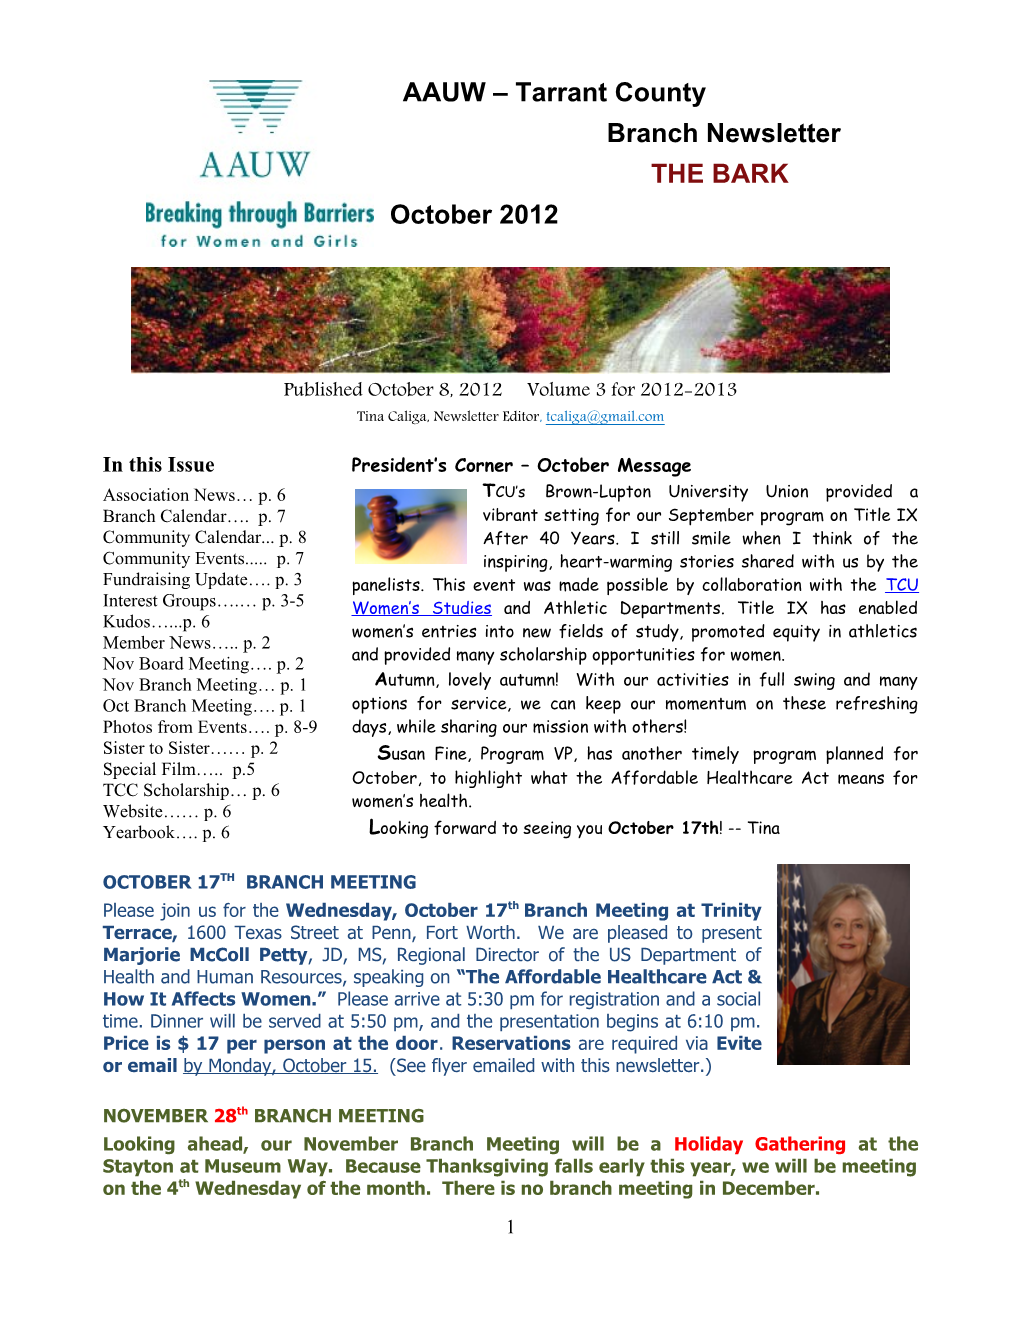 Published October 8, 2012 Volume 3 for 2012-2013